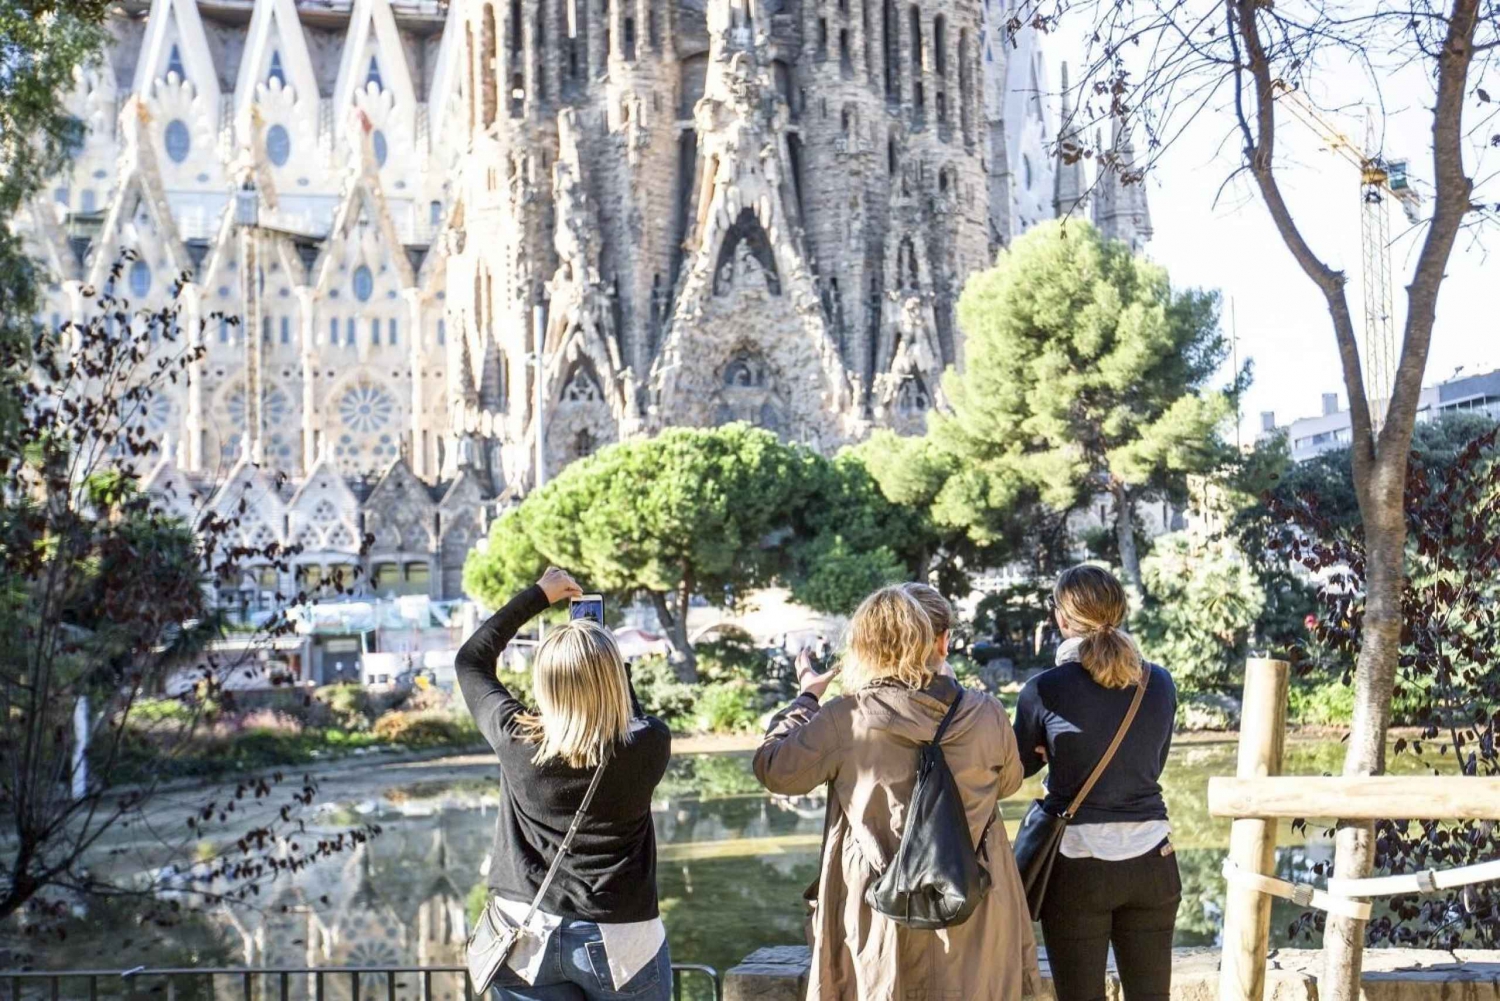 Barcelona: Sagrada Familia & Casa Batlló Führung